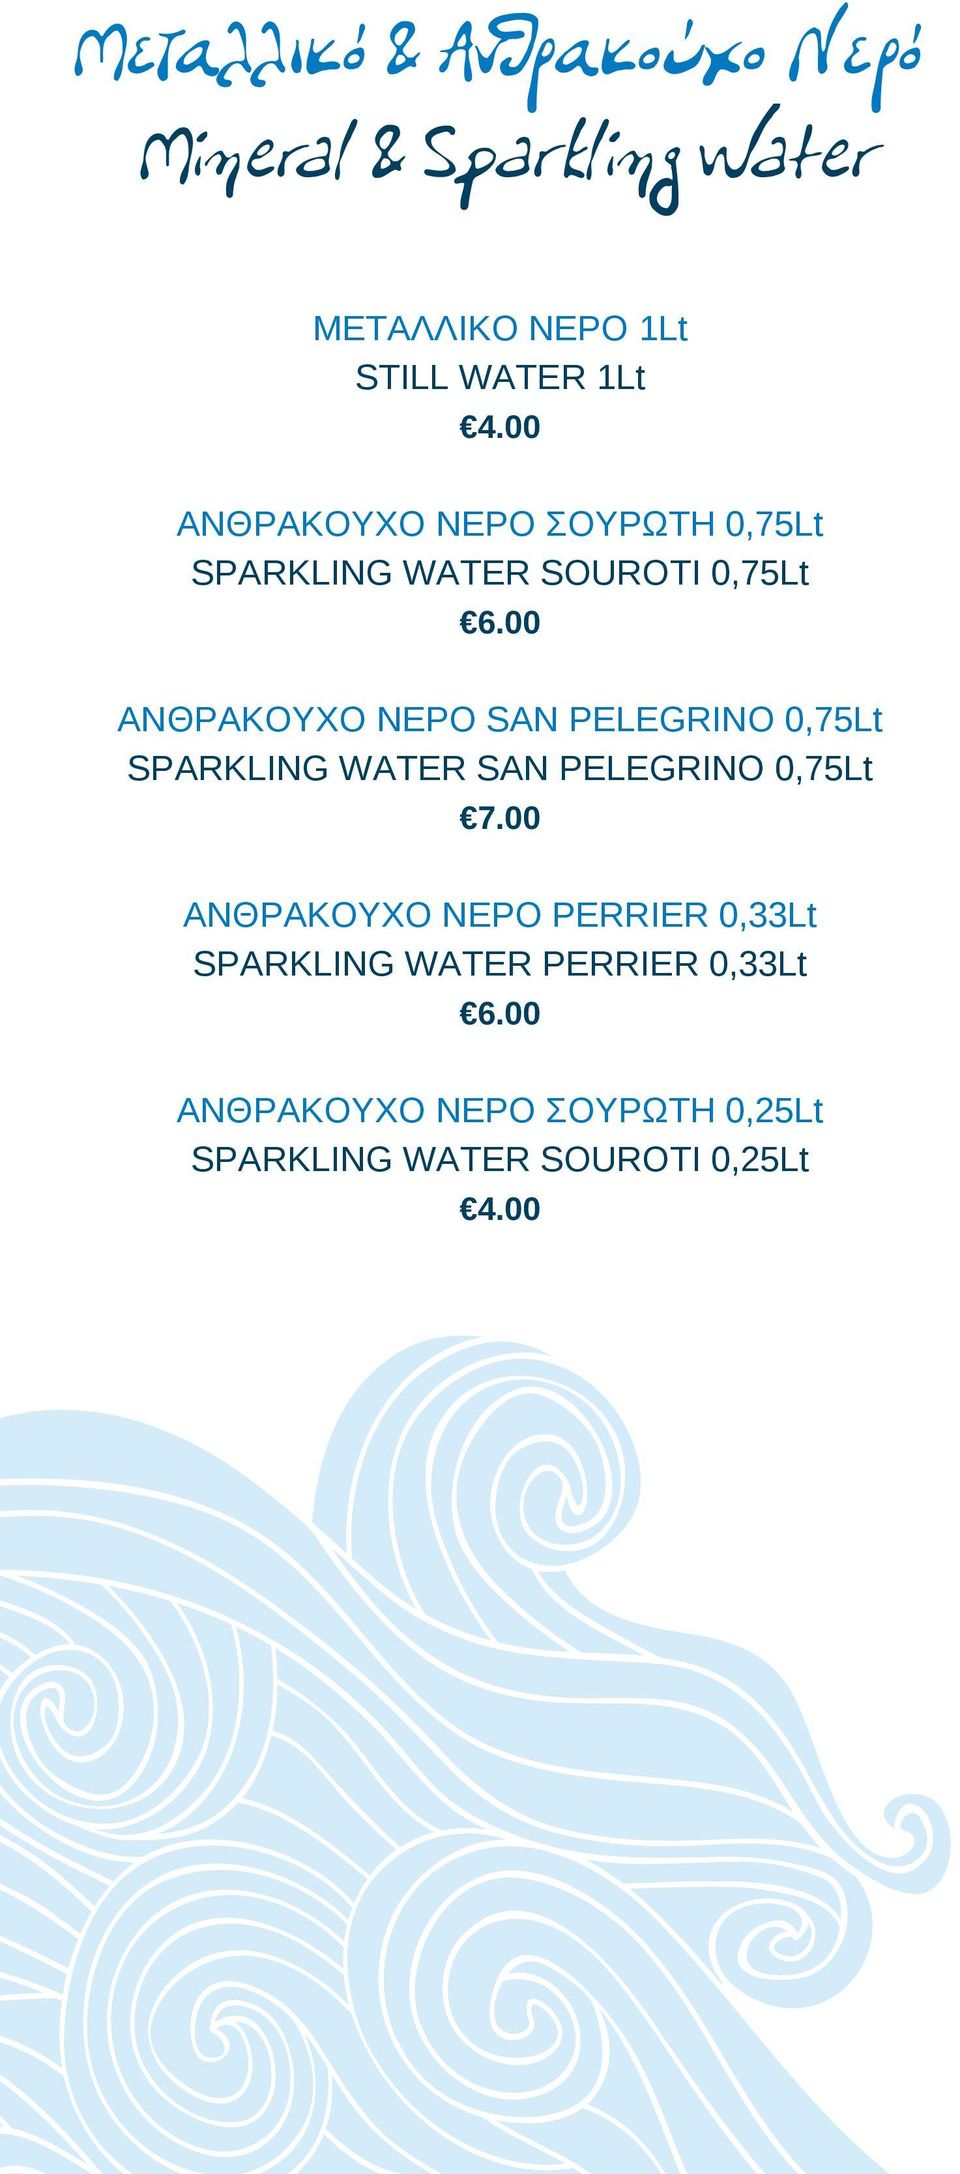 00 ΑΝΘΡΑΚΟΥΧΟ ΝΕΡΟ SAN PELEGRINO 0,75Lt SPARKLING WATER SAN PELEGRINO 0,75Lt 7.